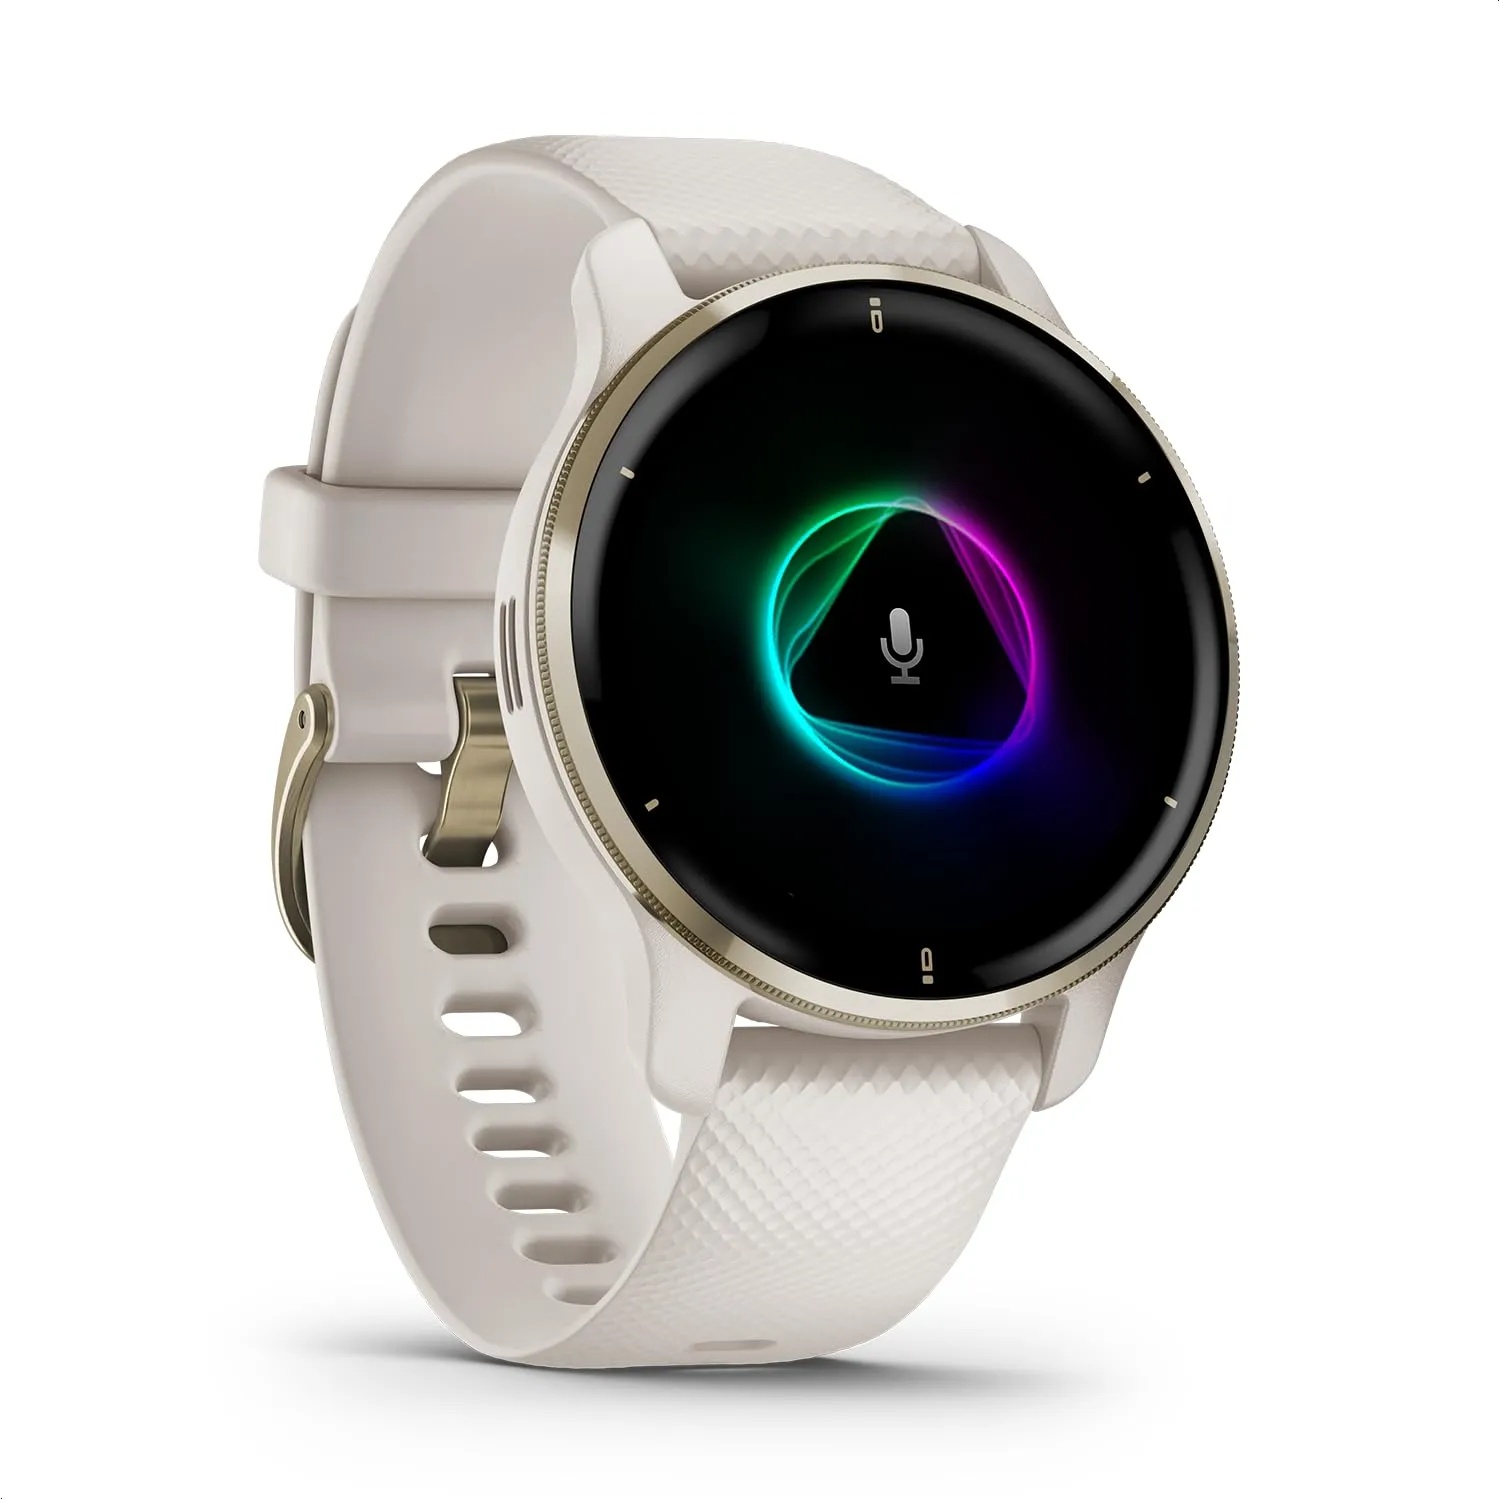 Garmin Venu 2 Plus – GPS-Fitness-Smartwatch mit Bluetooth Telefonie und Sprachassistenz. Ultrascharfes 1,3“ AMOLED-Touchdisplay, Fitnessfunktionen, Garmin Music und Garmin Pay